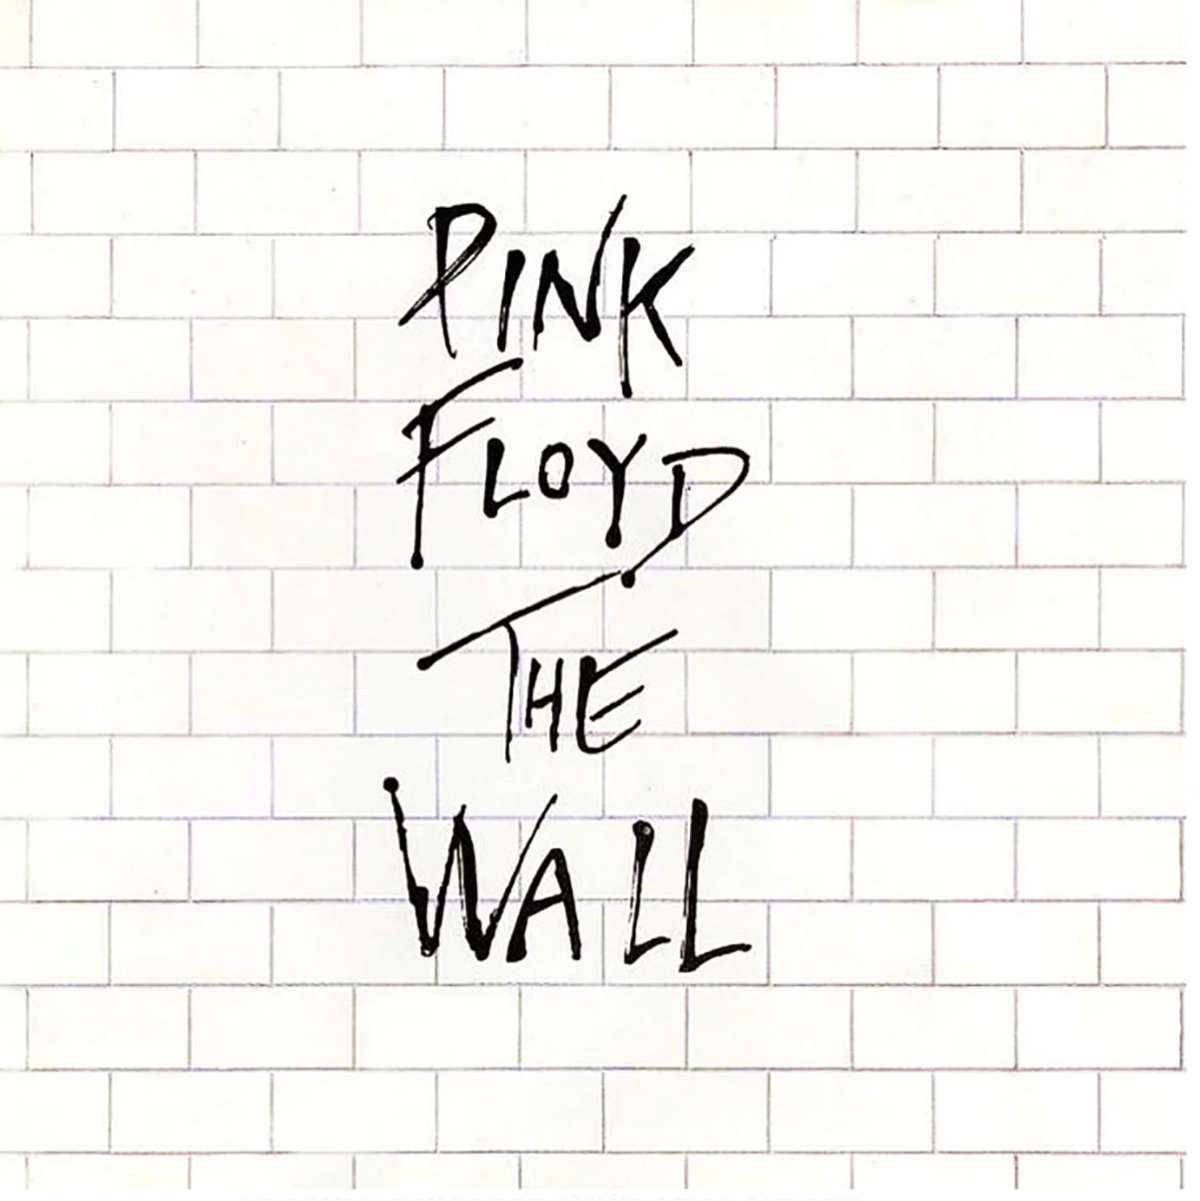 平克弗洛伊德 (Pink Floyd) 的最佳歌曲和專輯：歷史和意義